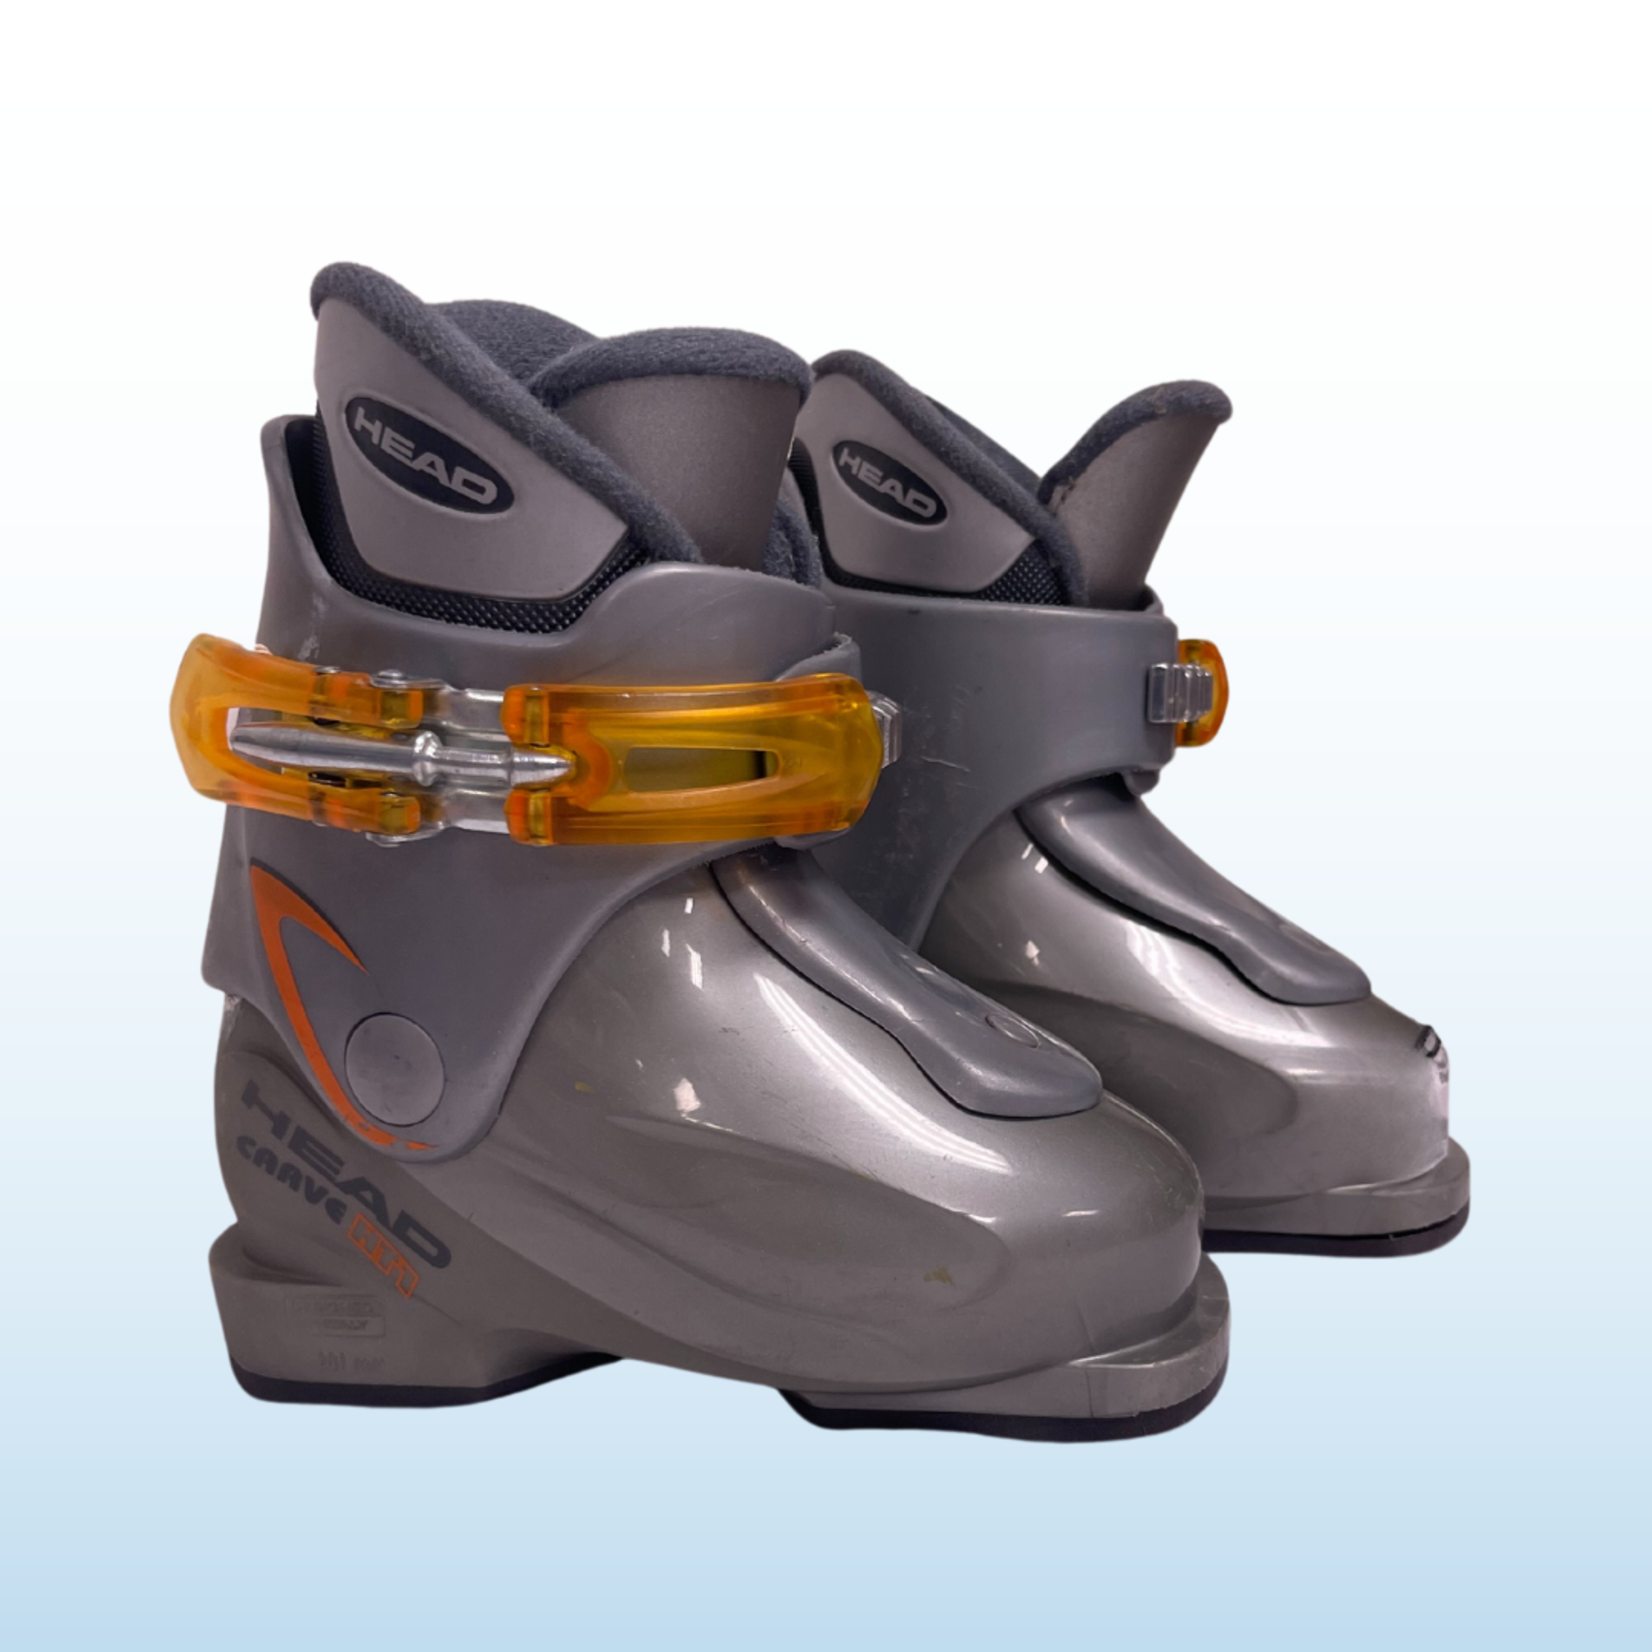 Head Head Carve X1 Kids Ski Boots, Size 15-16.5